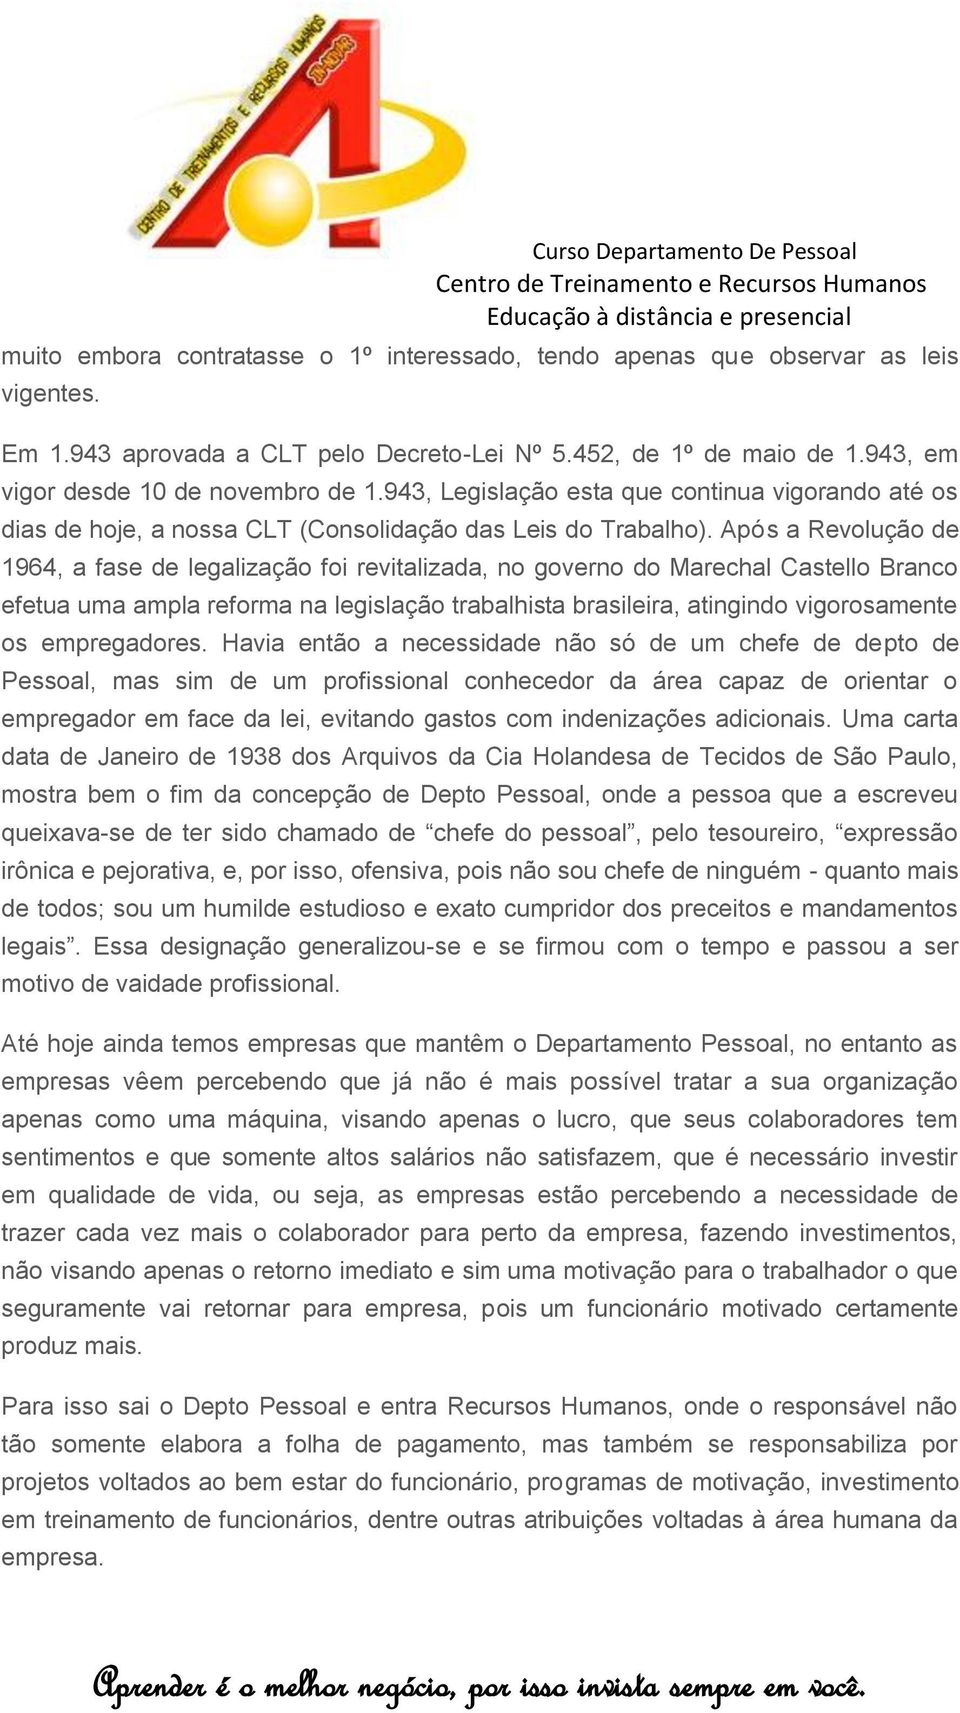 Após a Revolução de 1964, a fase de legalização foi revitalizada, no governo do Marechal Castello Branco efetua uma ampla reforma na legislação trabalhista brasileira, atingindo vigorosamente os